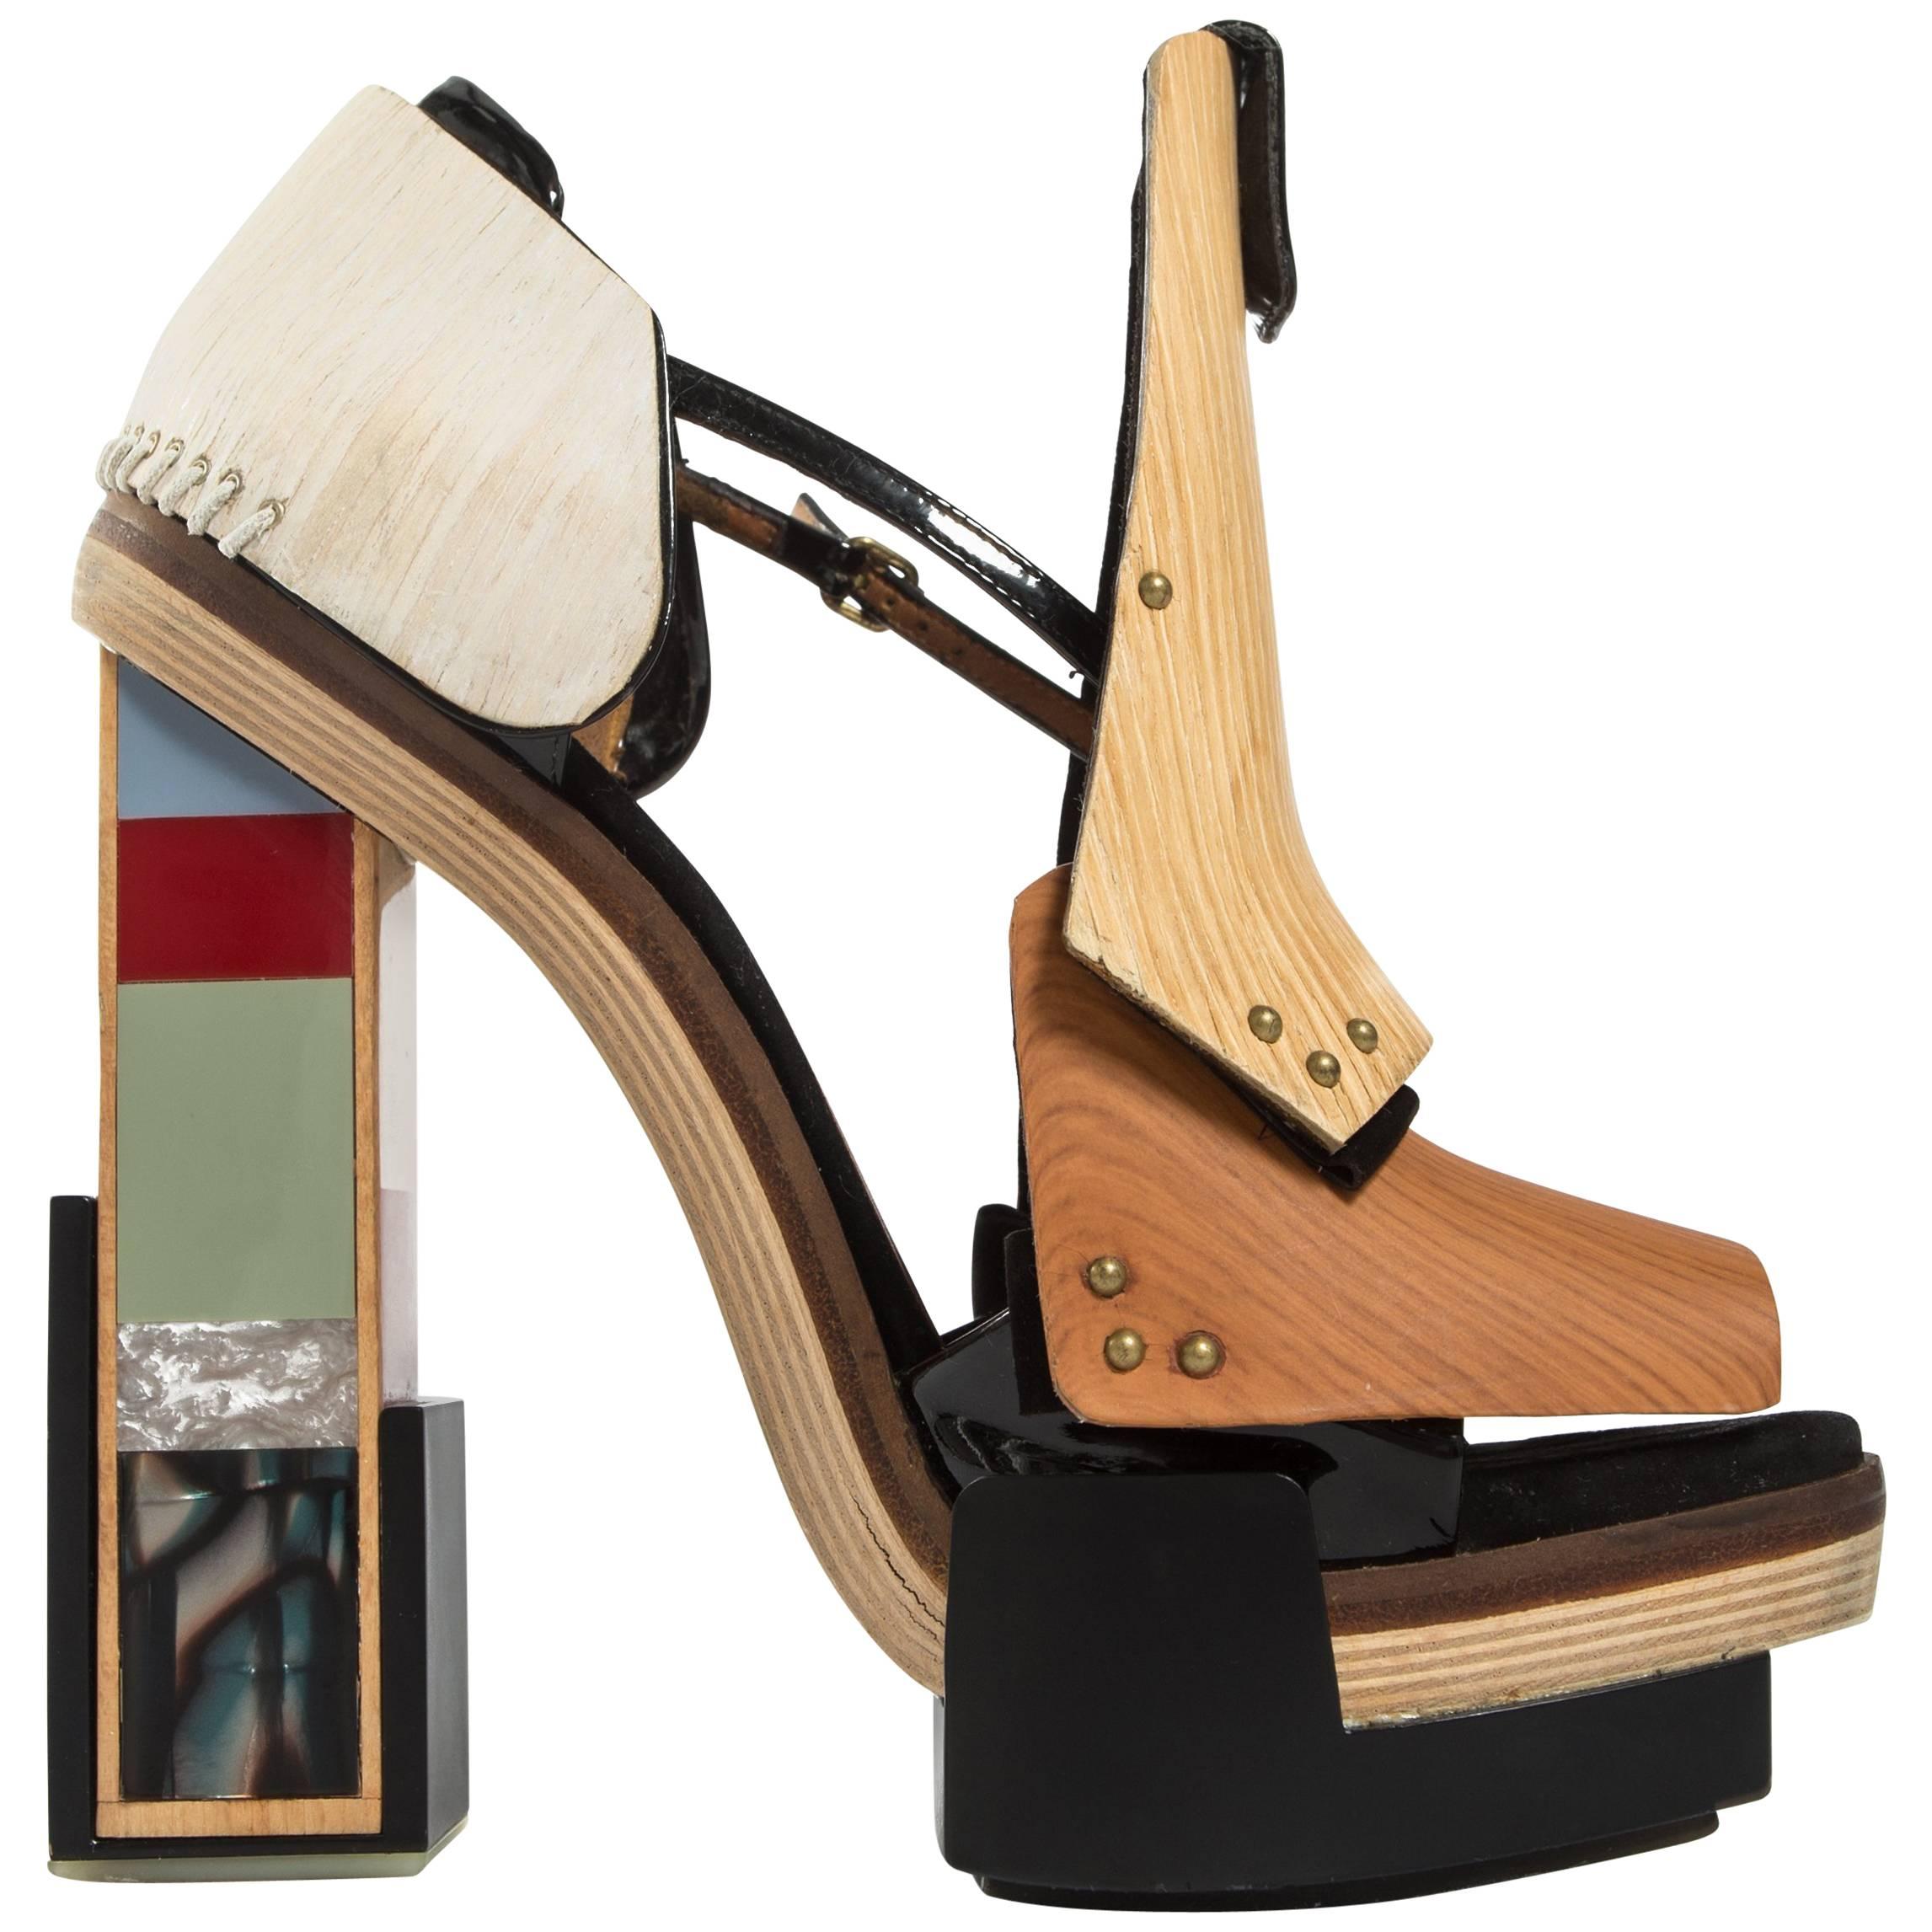 Balenciaga by Nicolas Ghesquière mixed media wooden block heels, A/W 2010